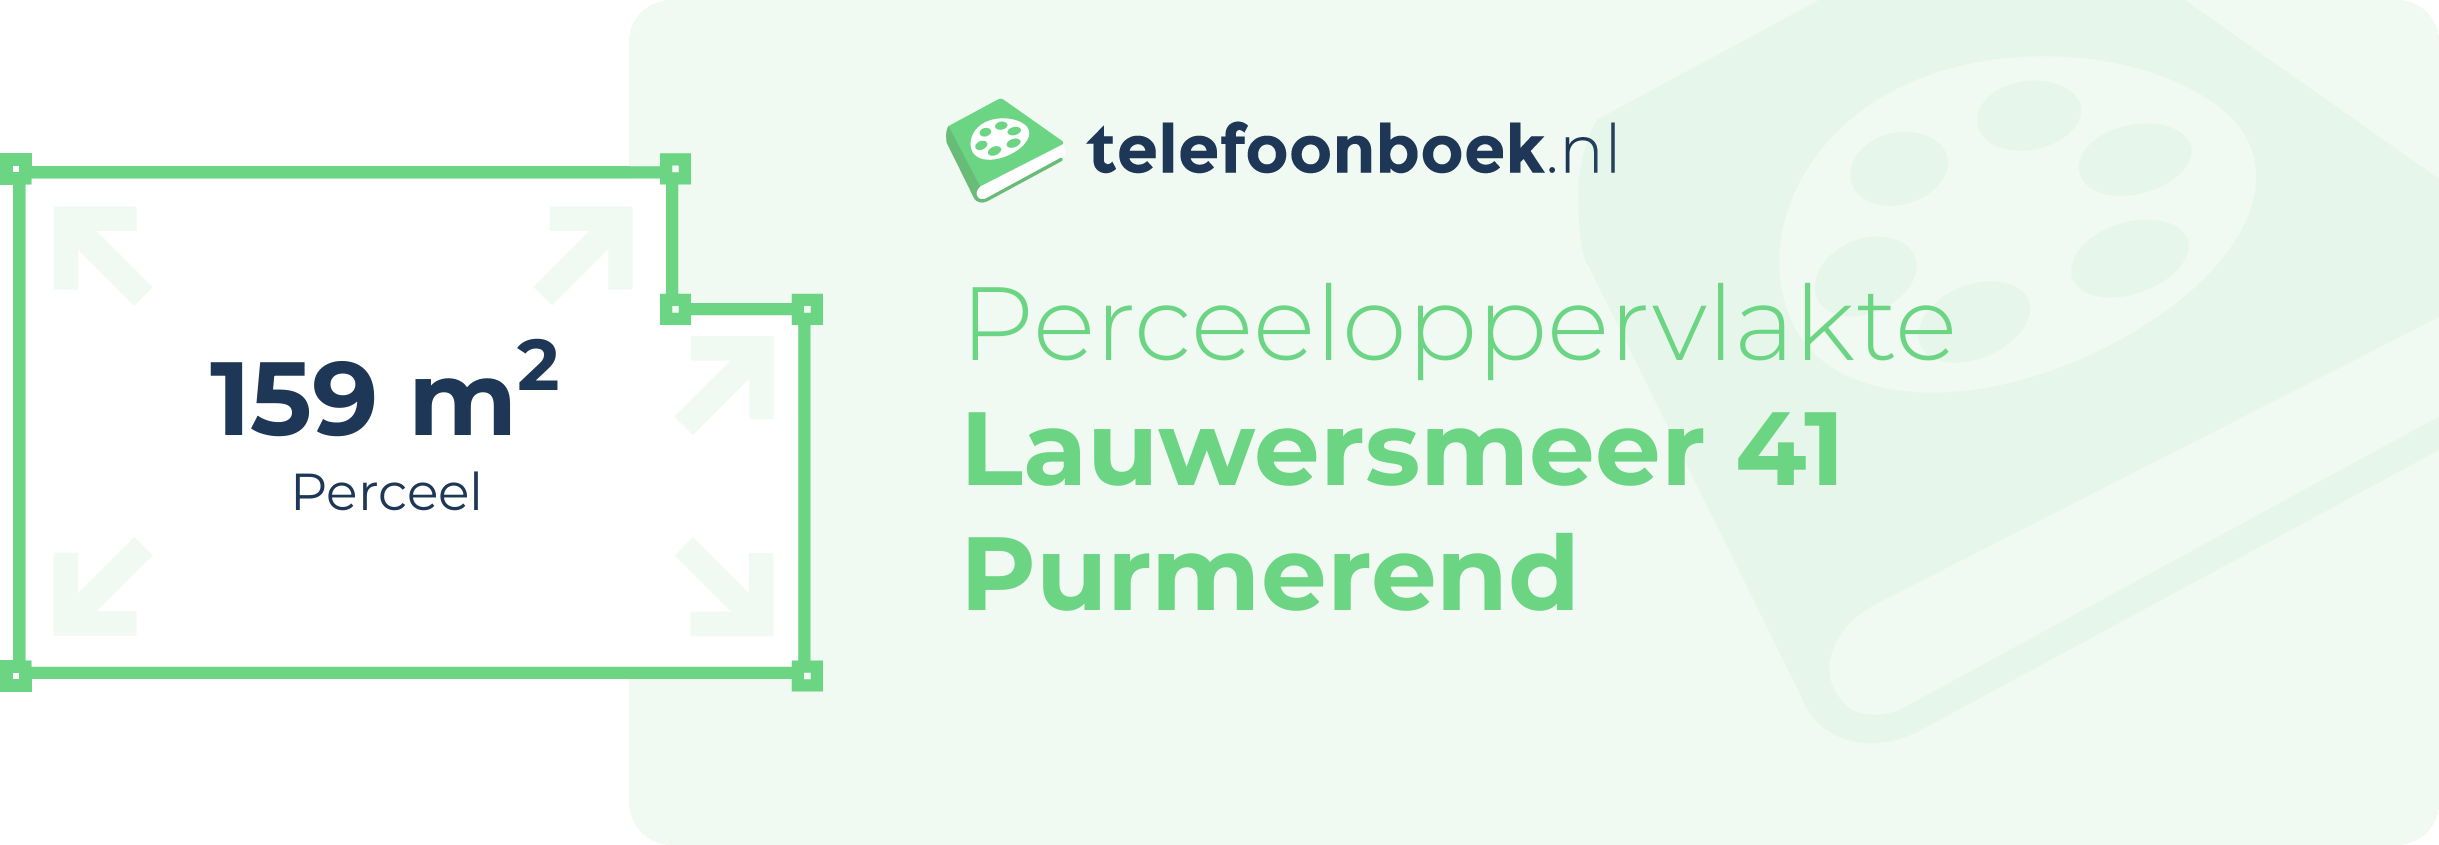 Perceeloppervlakte Lauwersmeer 41 Purmerend